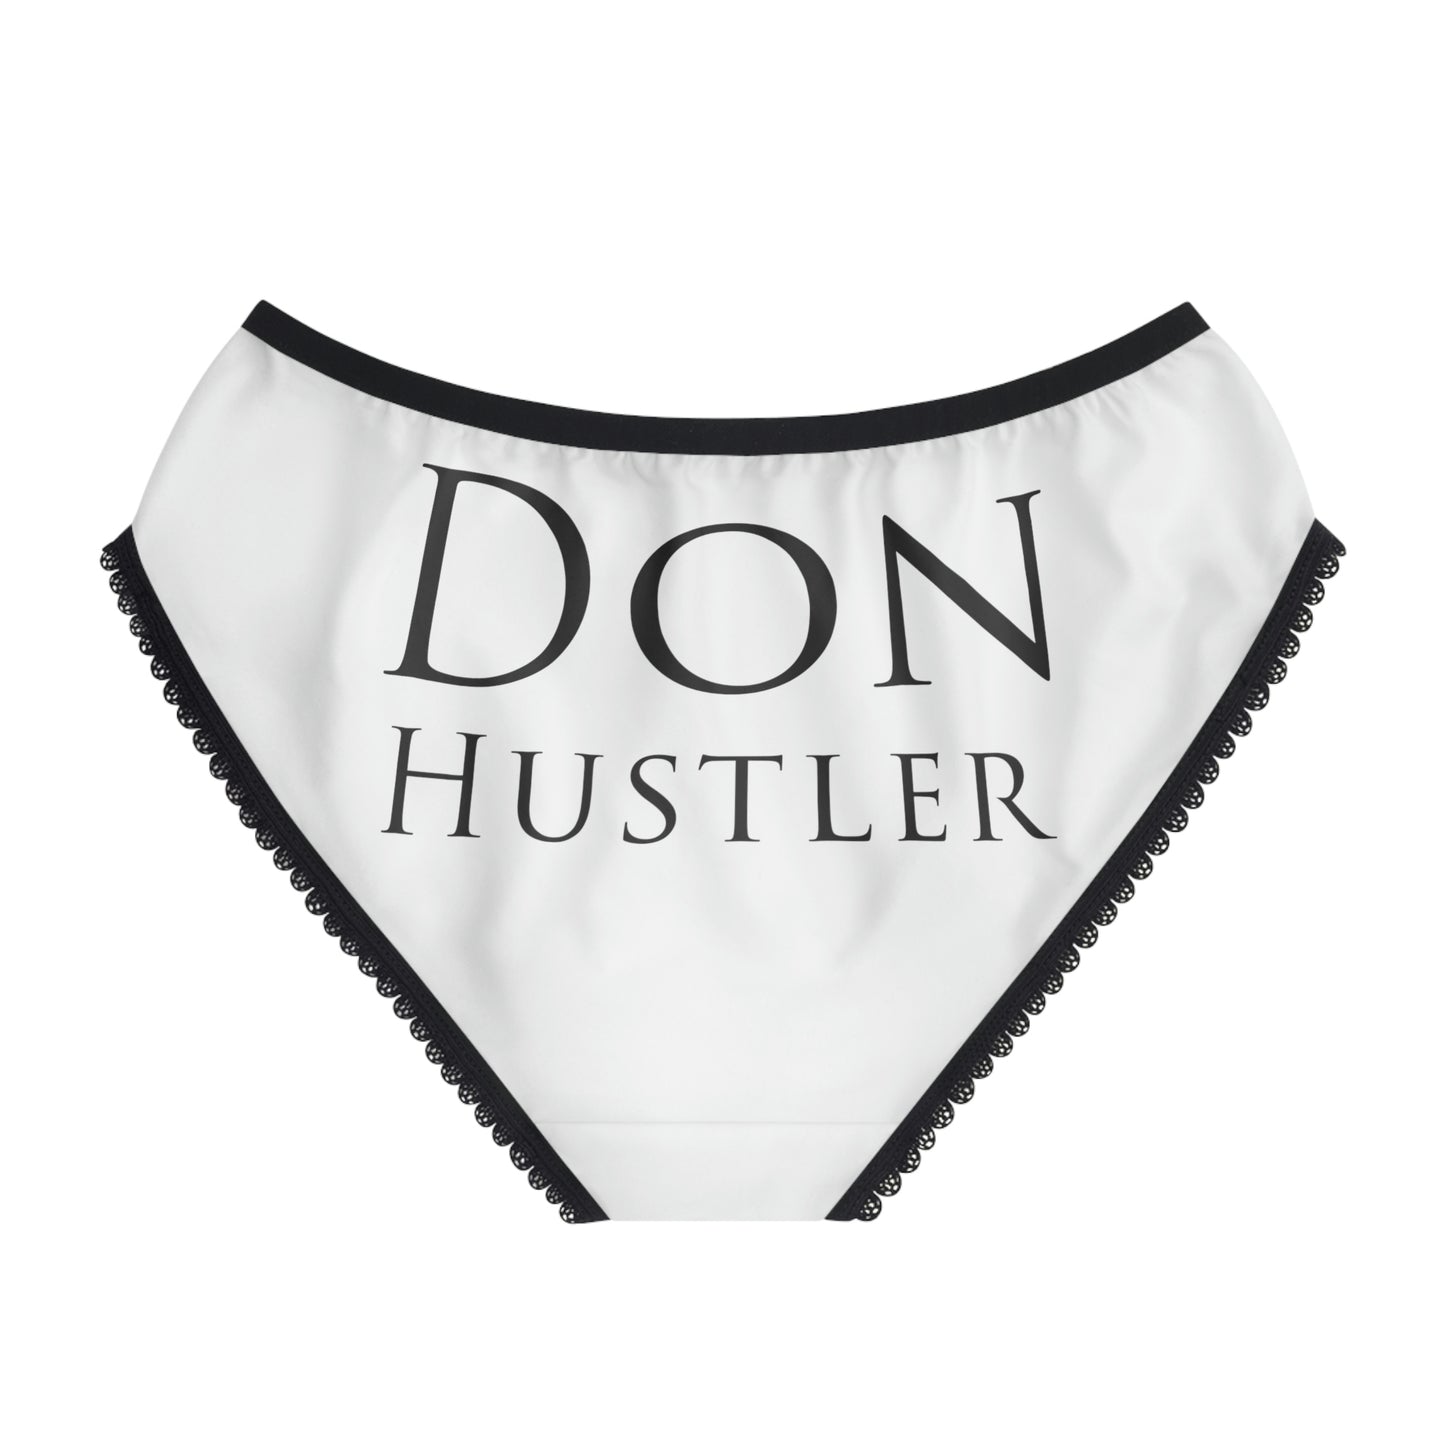 Don Hustler Women's Panty